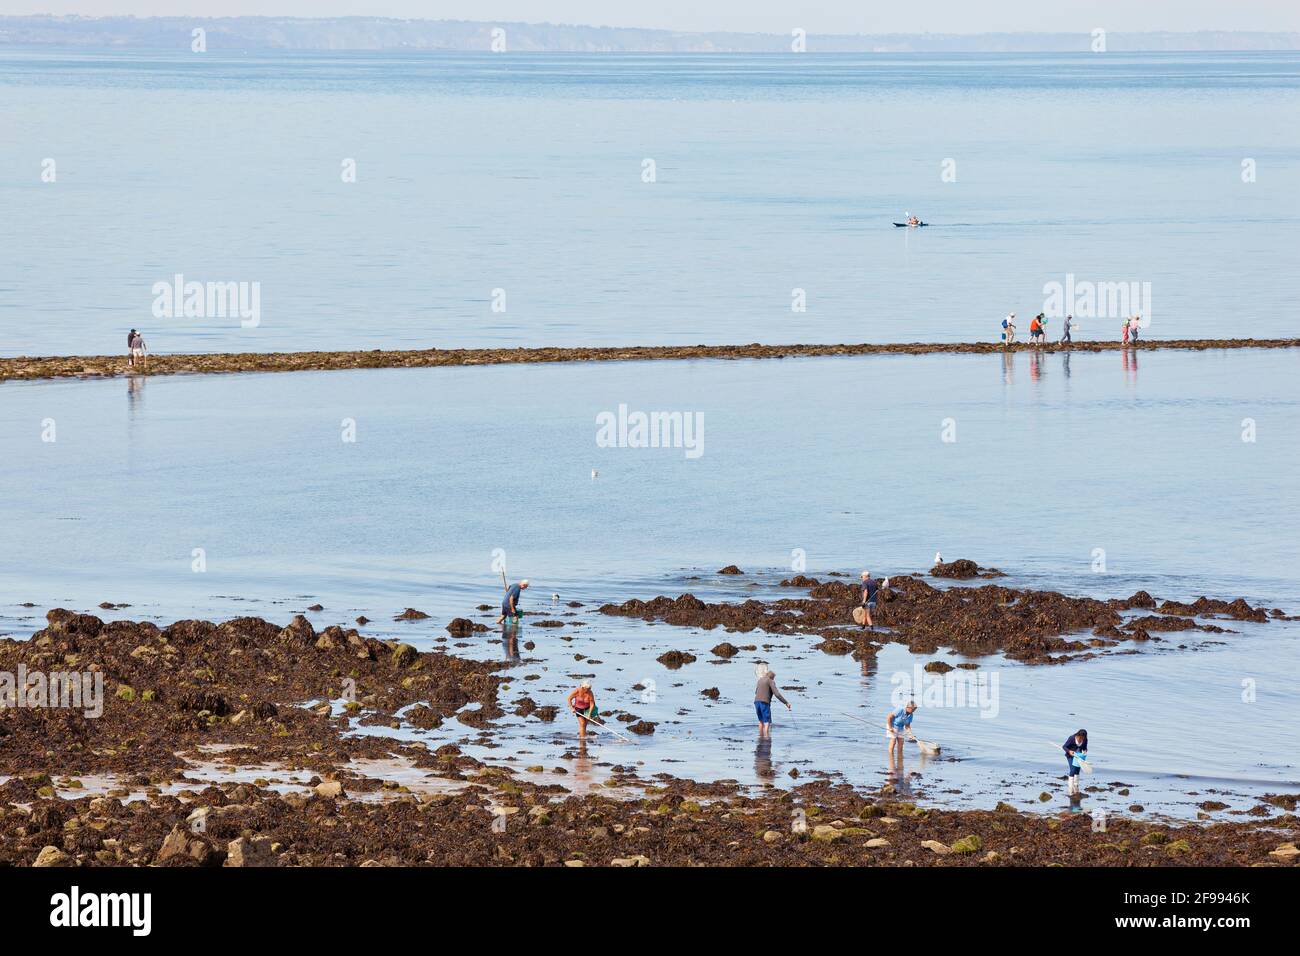 Die Angler pilgern auf die Gezeiteninsel Verdelet vor der Stadt Val Andre, um zu Fuß zu fischen - Peche a pied. Stockfoto